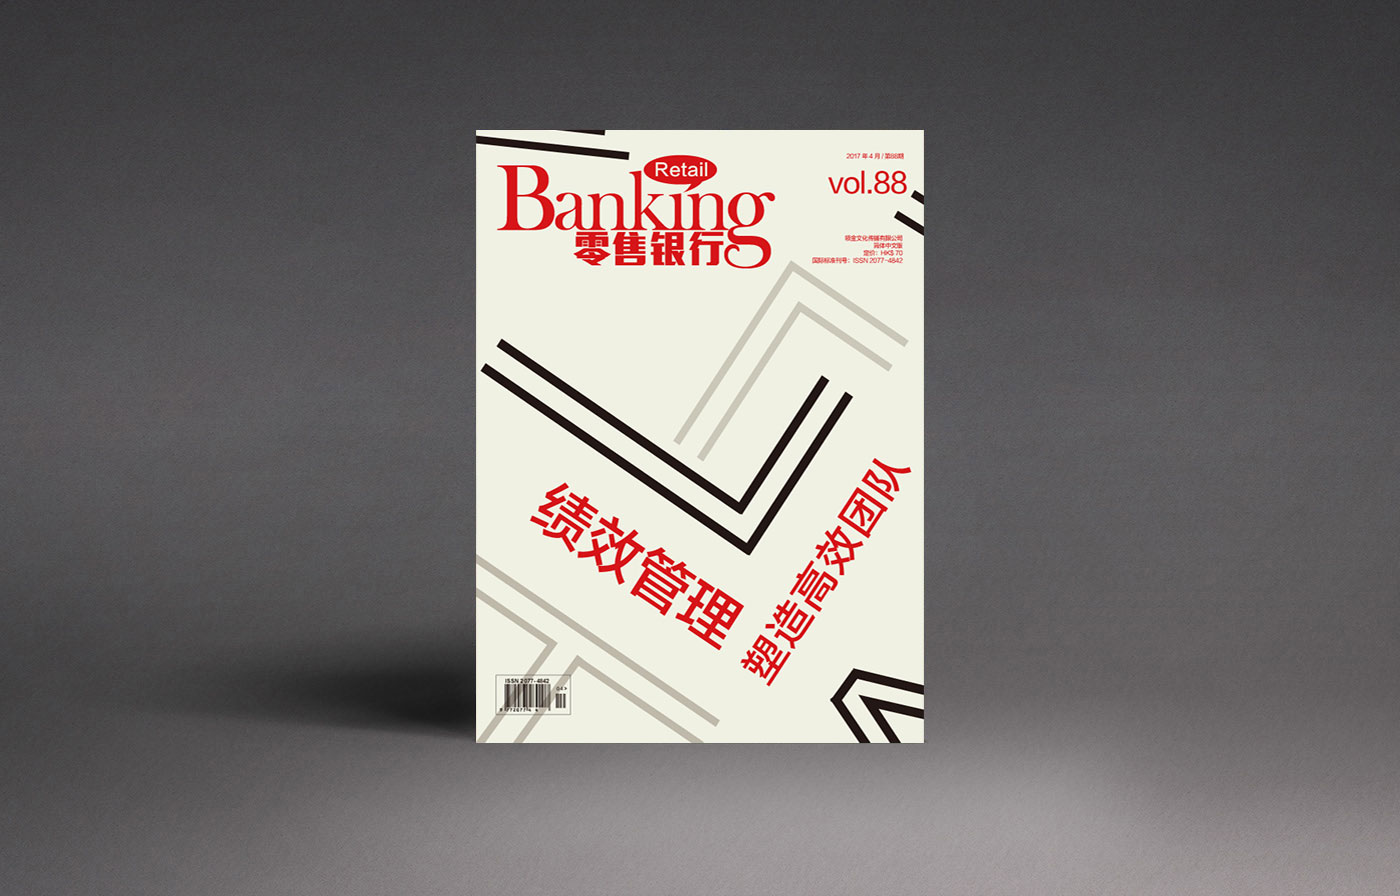 2017年4月《零售银行》杂志封面专题排版设计